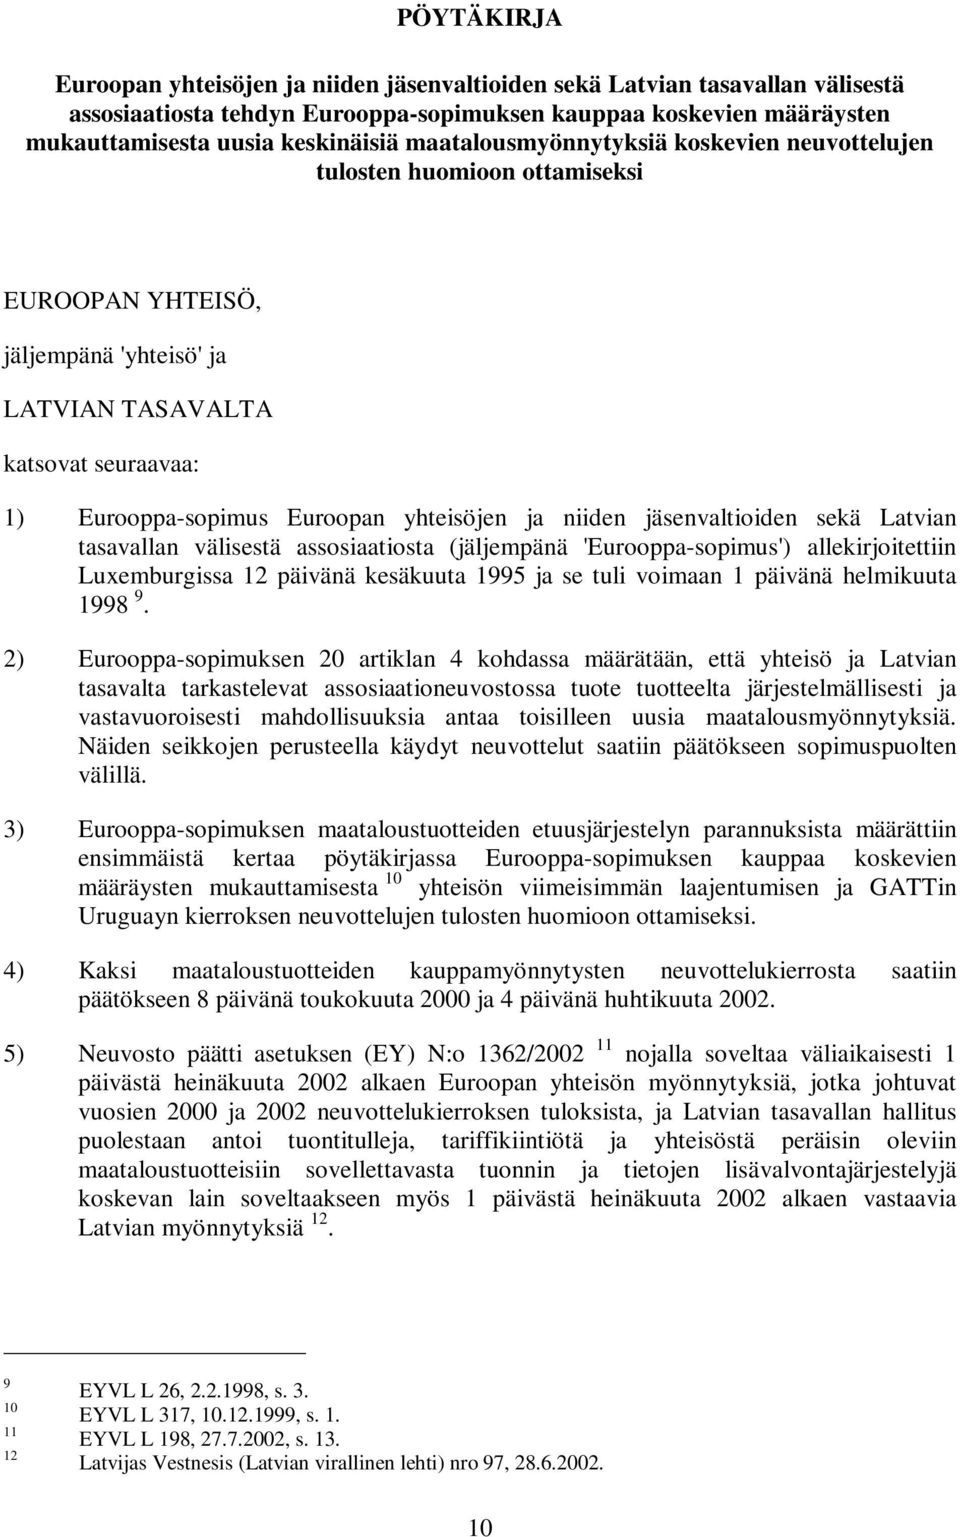 niiden jäsenvaltioiden sekä Latvian tasavallan välisestä assosiaatiosta (jäljempänä 'Eurooppa-sopimus') allekirjoitettiin Luxemburgissa 12 päivänä kesäkuuta 1995 ja se tuli voimaan 1 päivänä